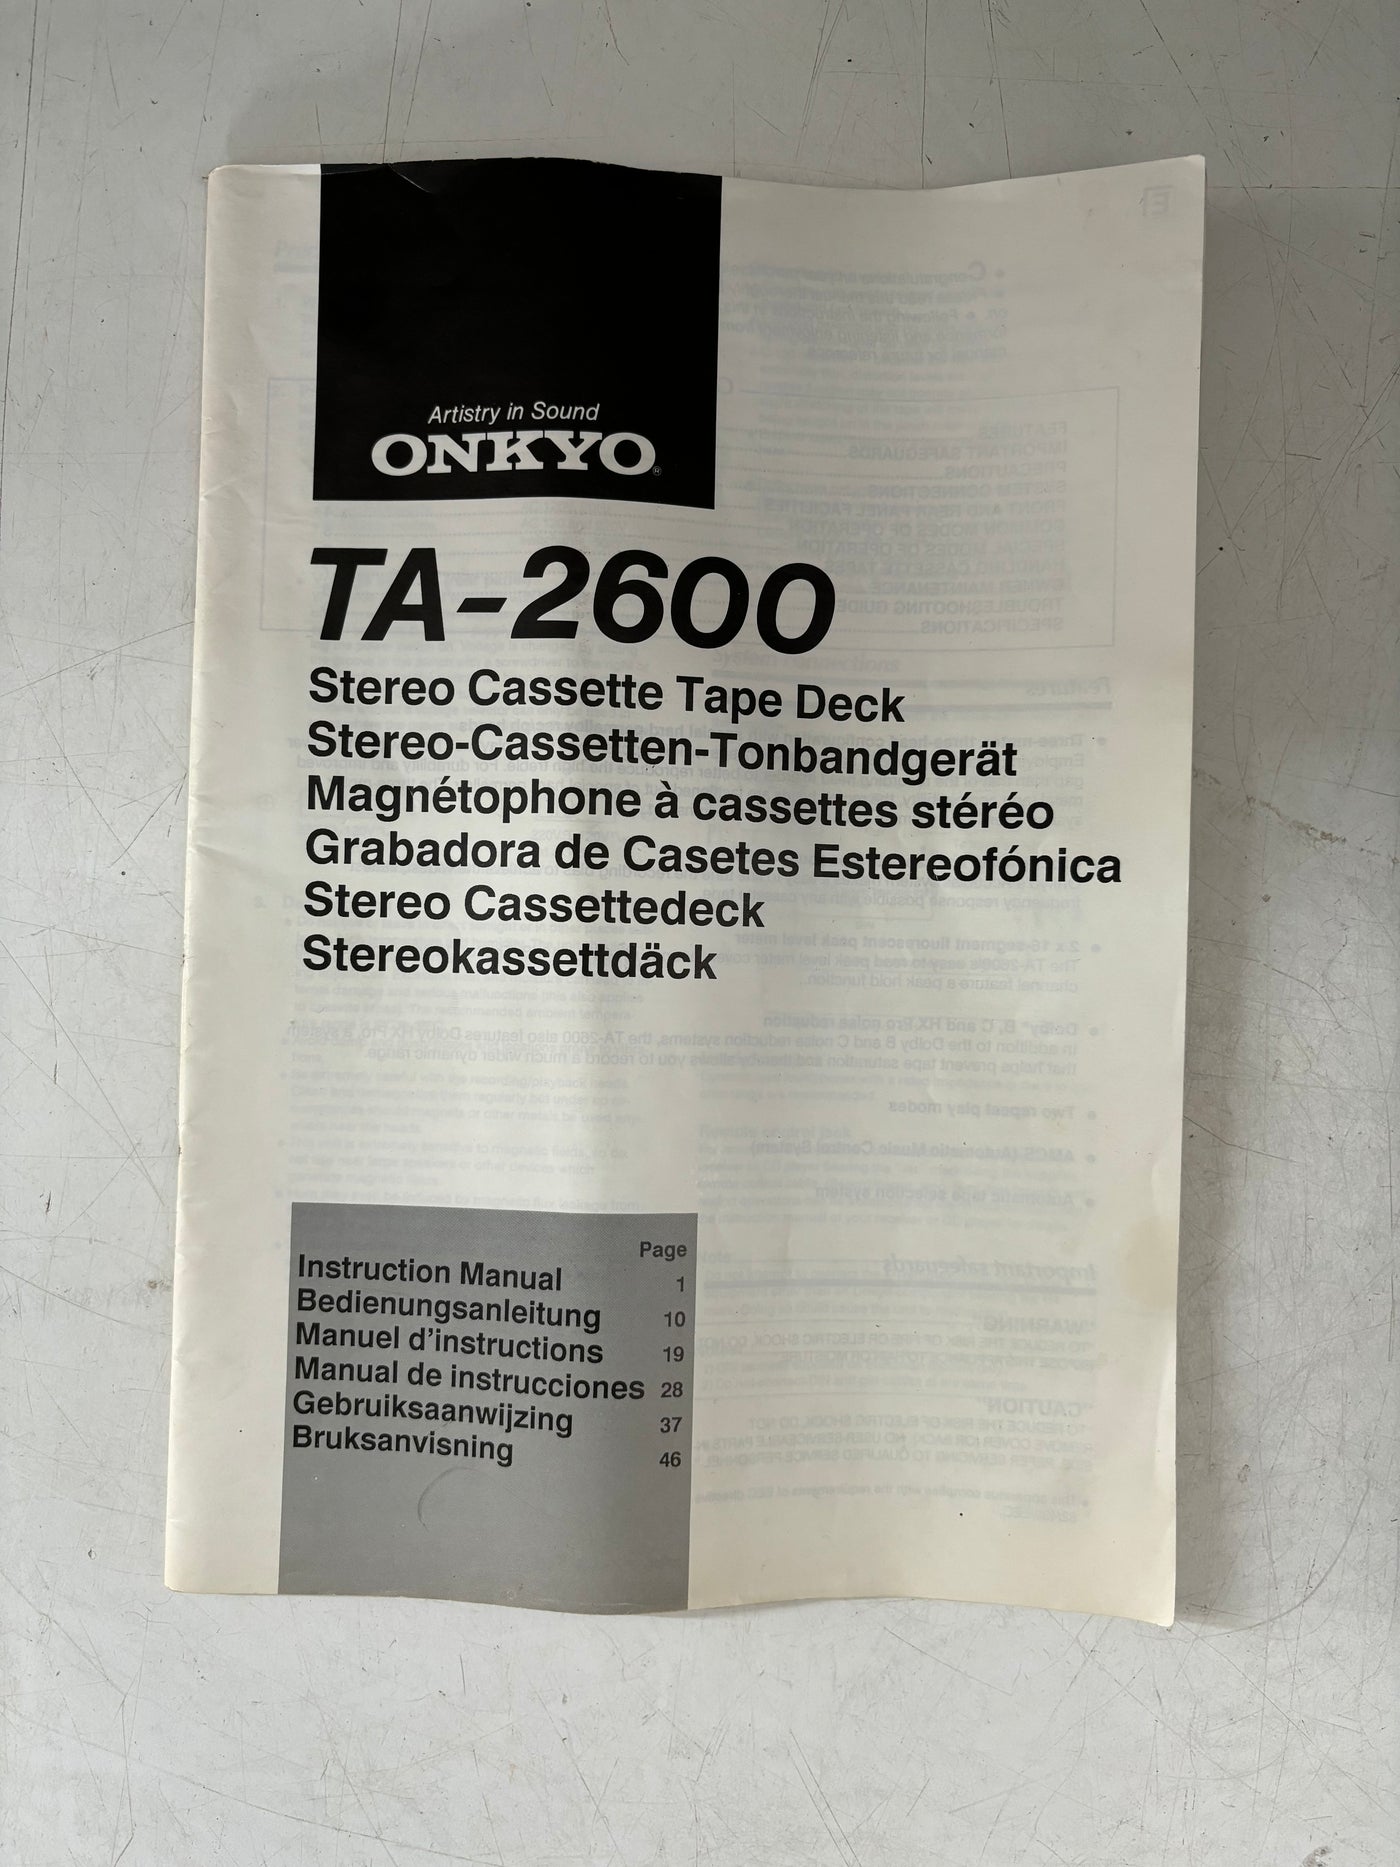 Onkyo TA-2600
Stereo Cassette Tape Deck User Manual